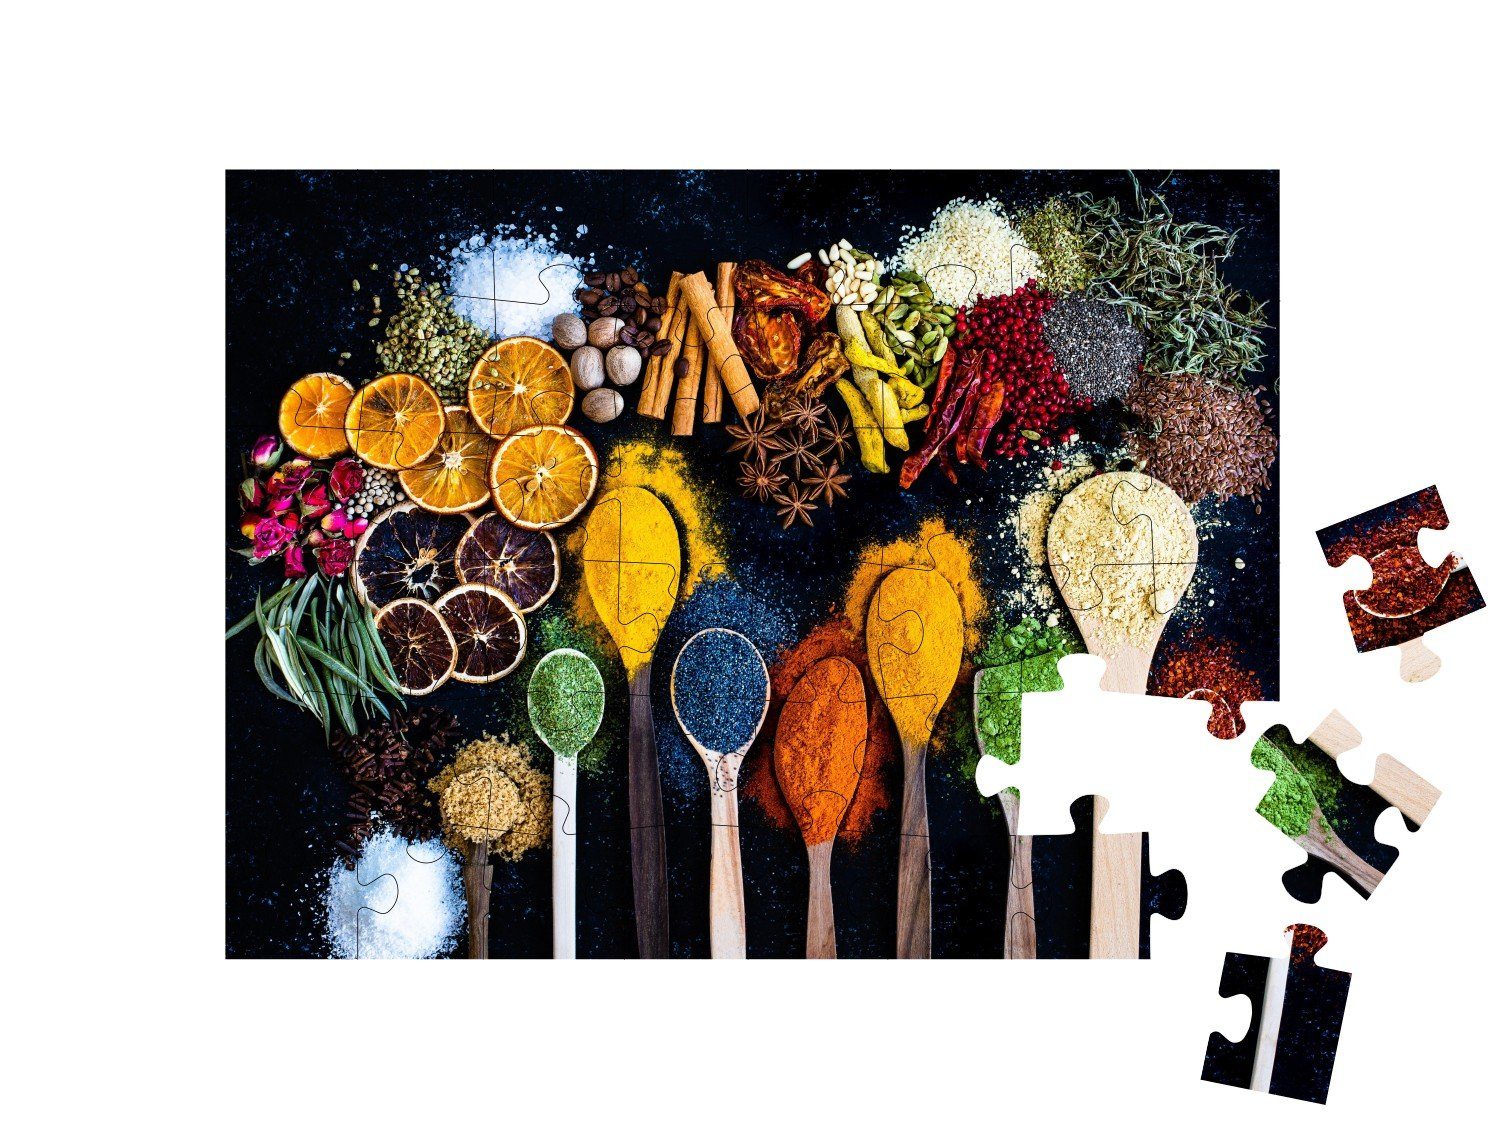 puzzleYOU Puzzle und Puzzleteile, puzzleYOU-Kollektionen Moderne von 48 Vielfalt Puzzle-Neuheiten Puzzles, getrockneten Früchten, Gewürze, Gewürzen